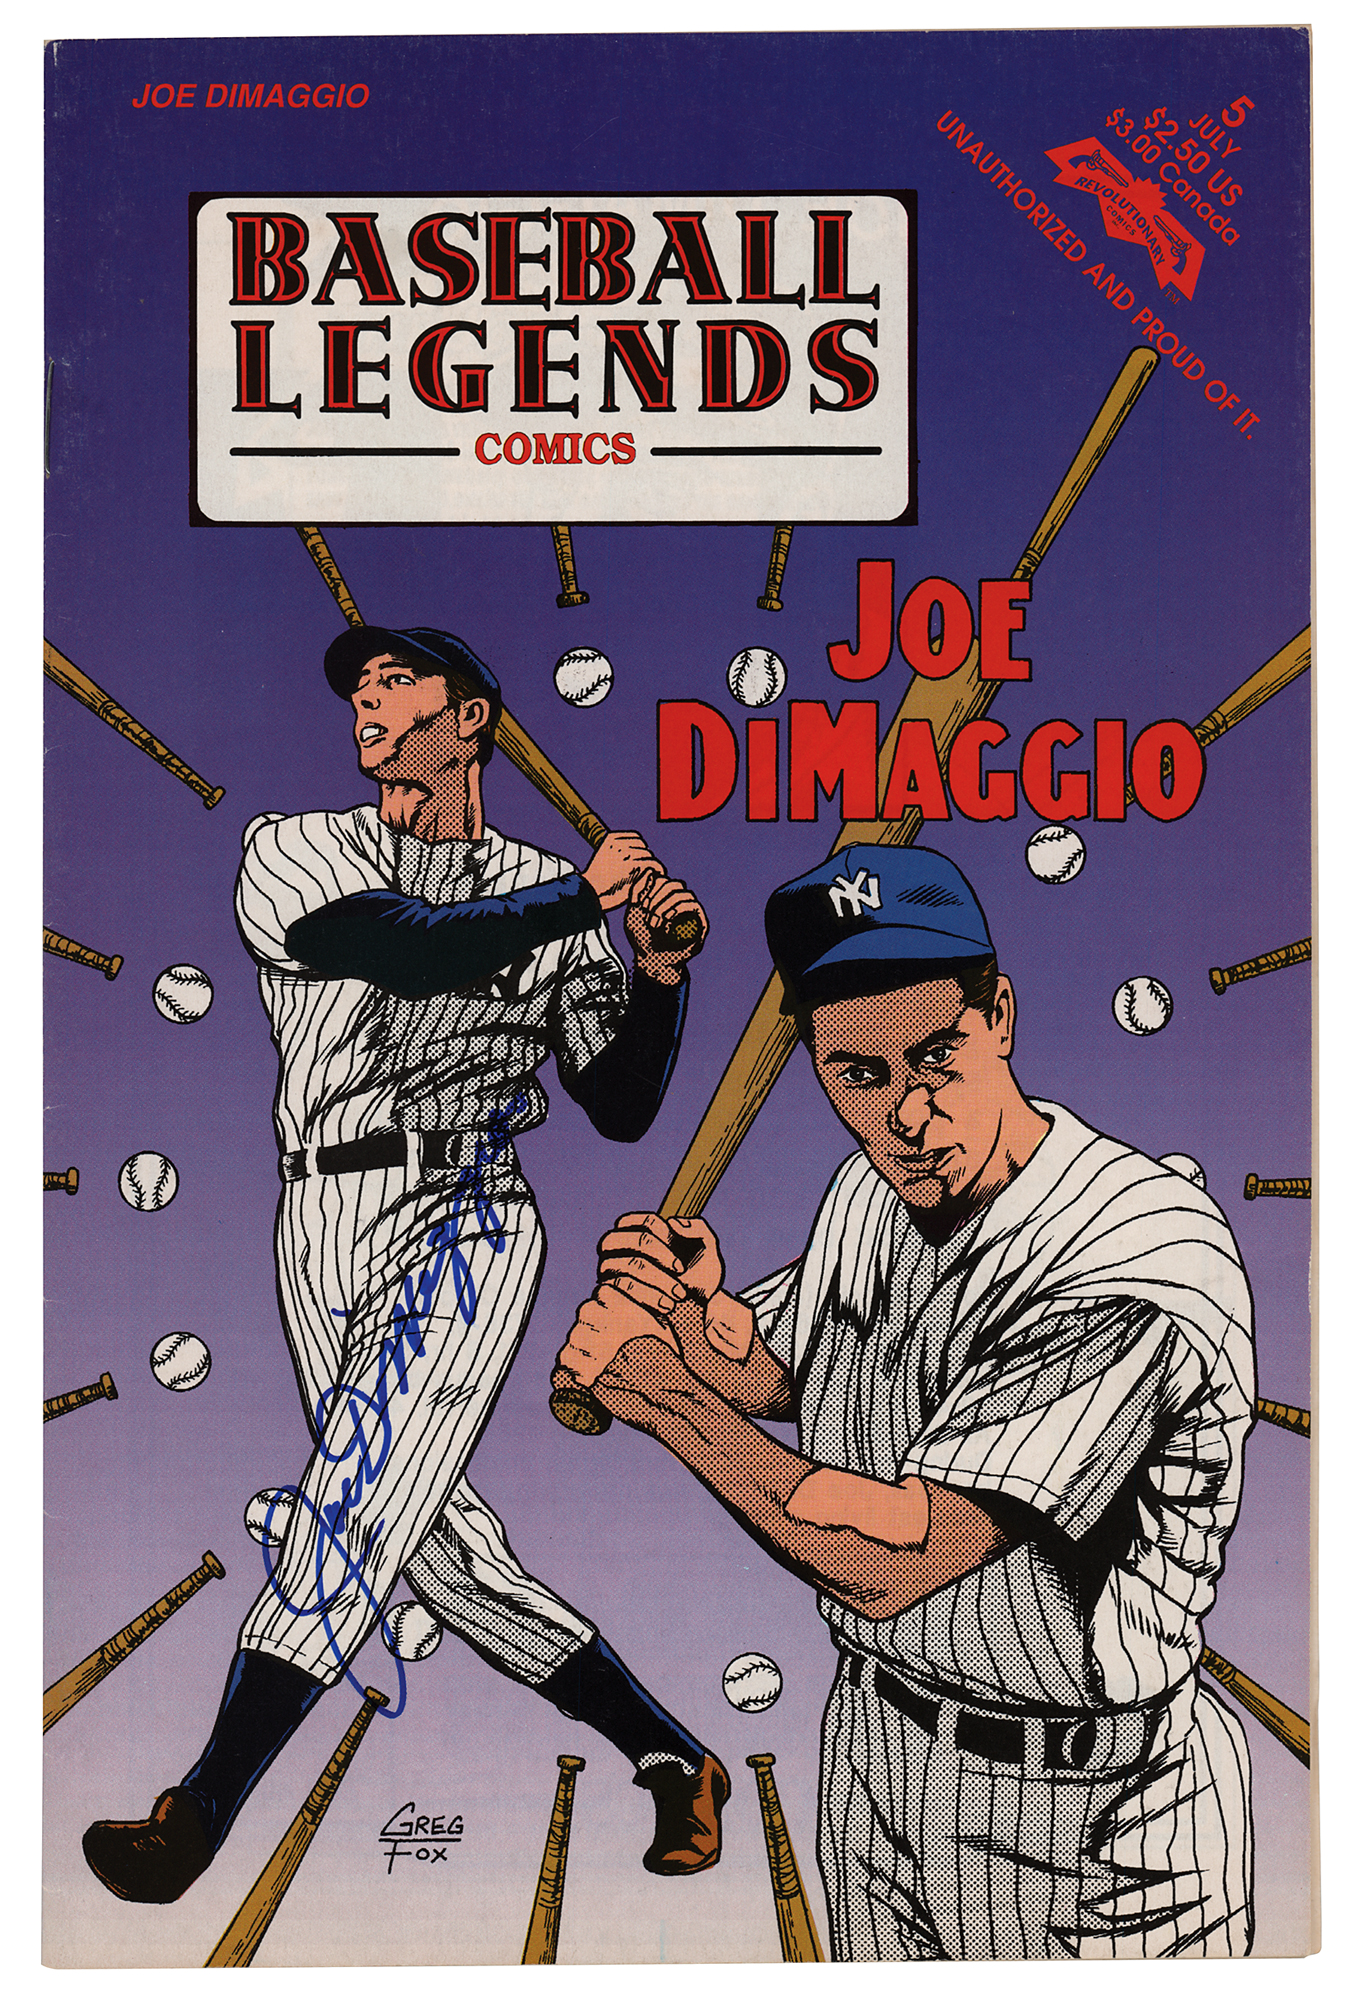 Lot #830 Joe DiMaggio Signed Comic Book